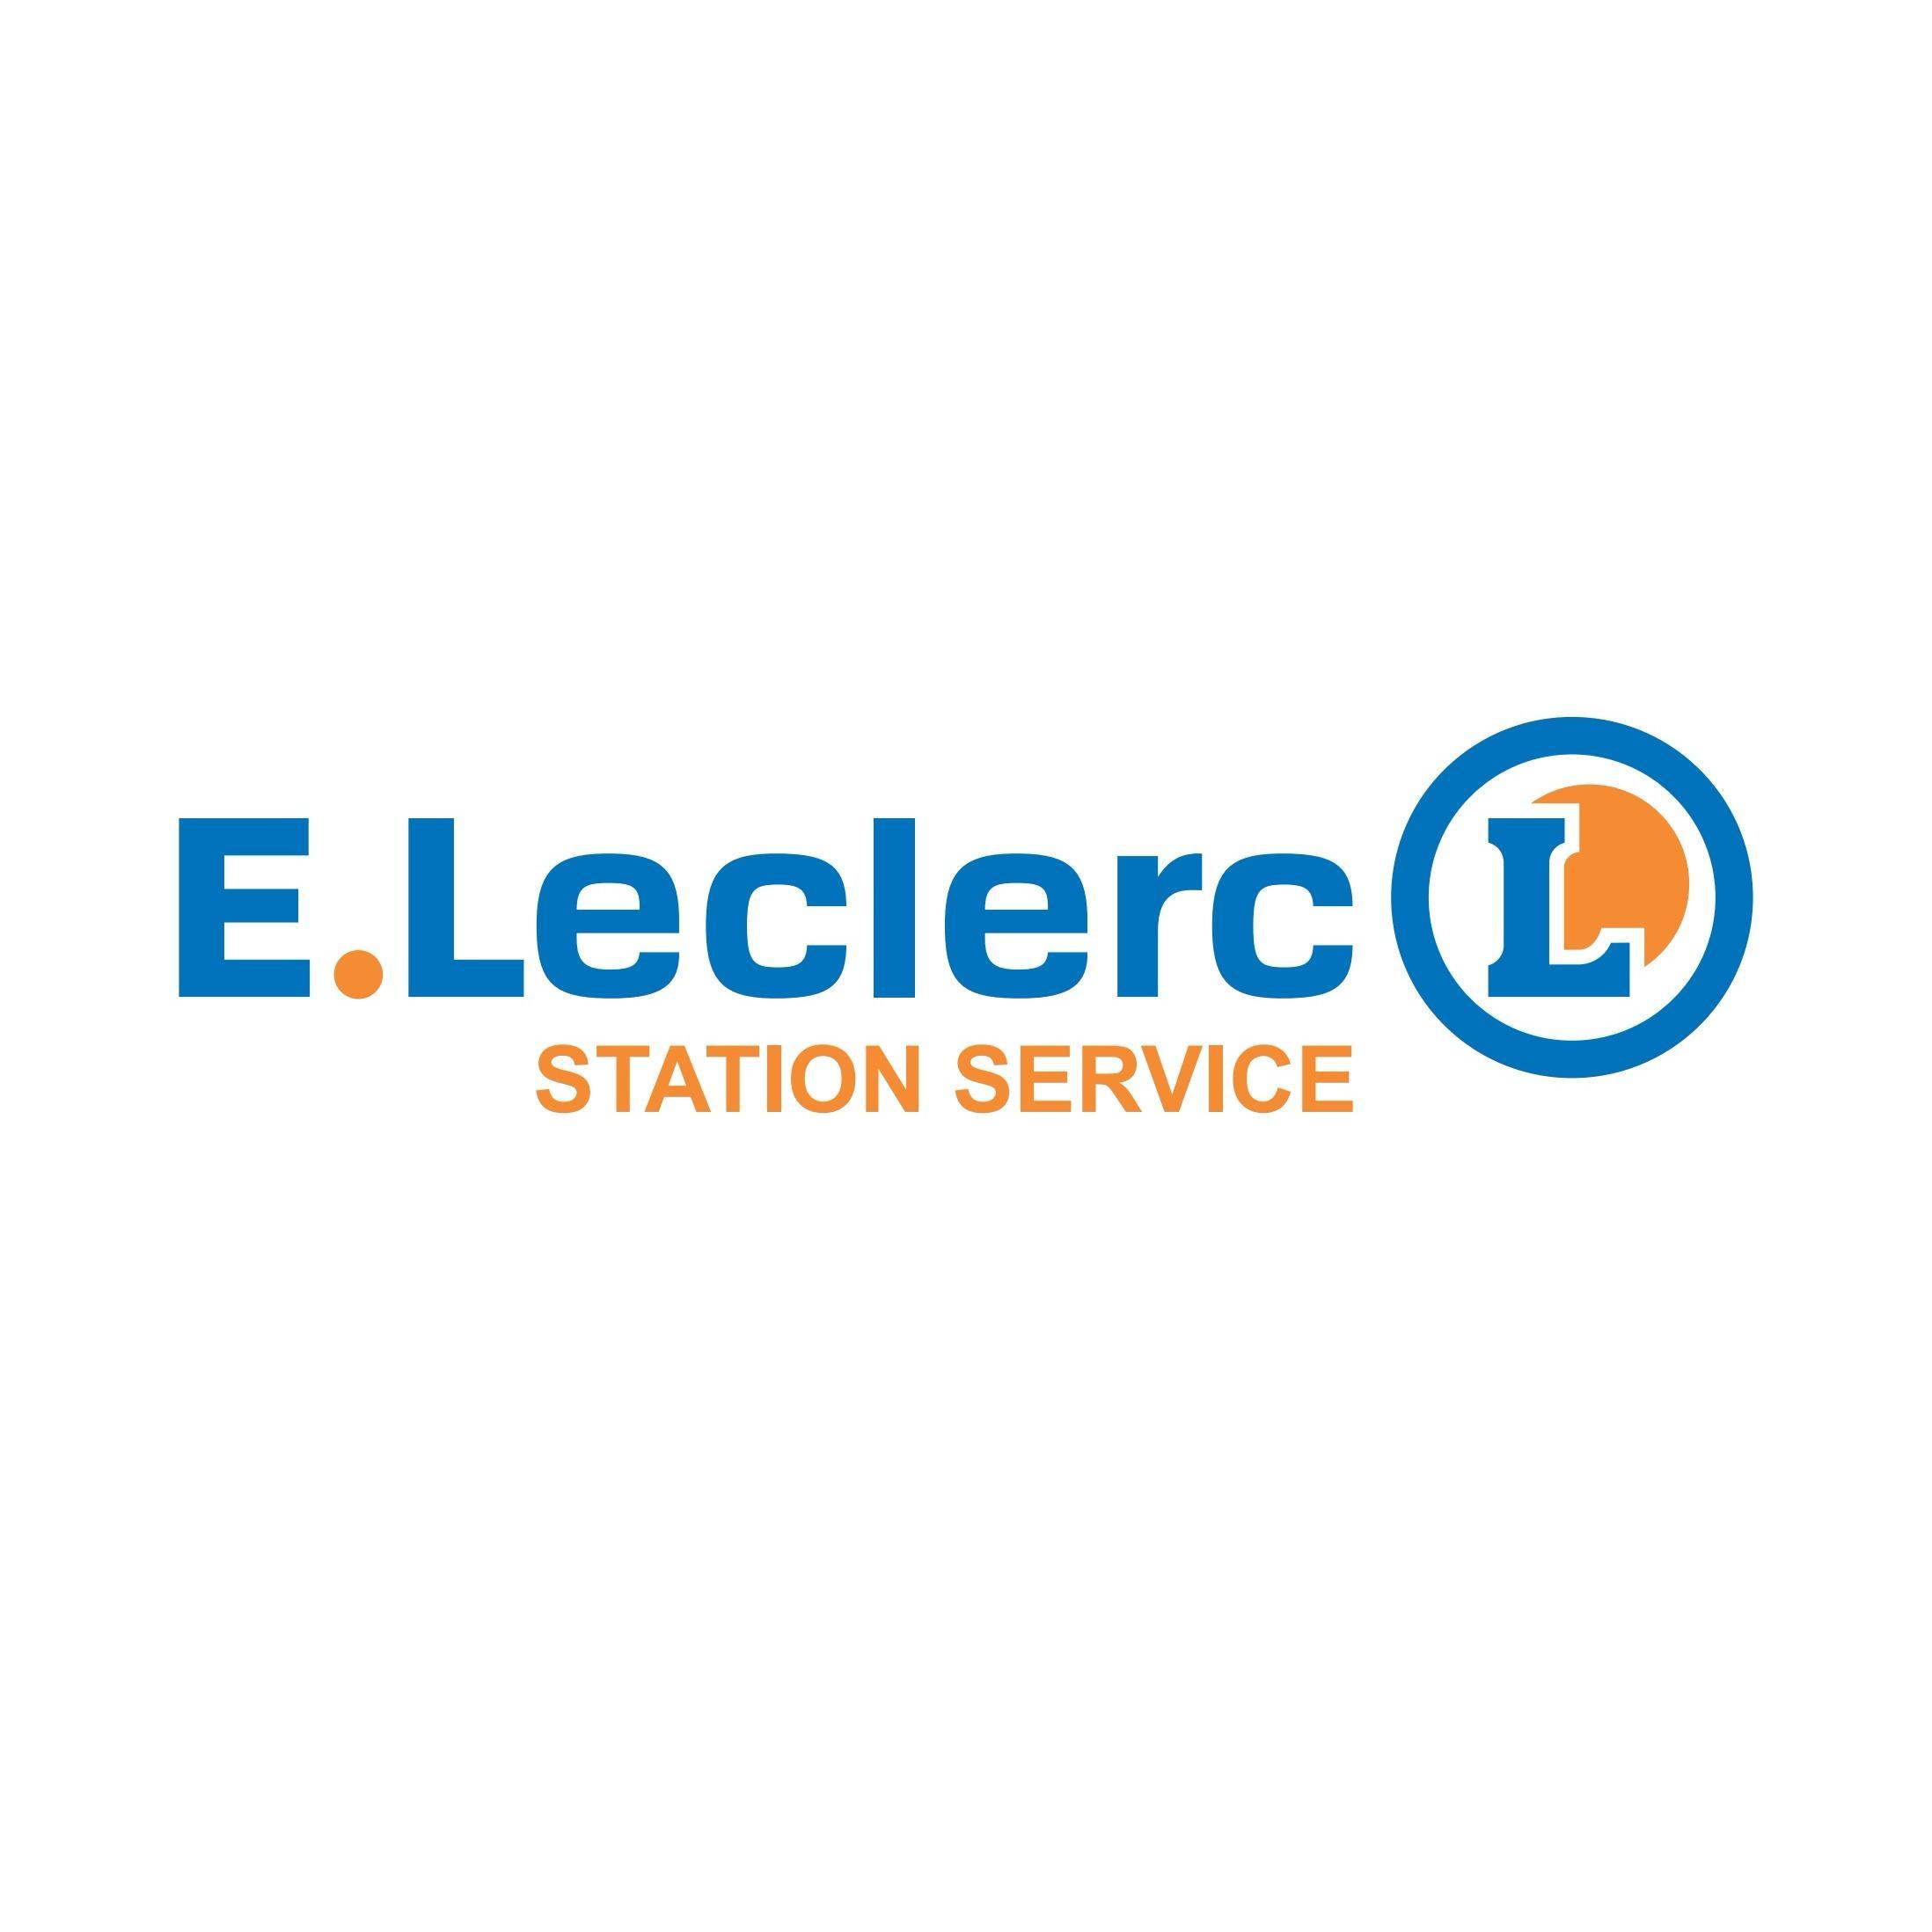 E.leclerc Station Service Lourdes